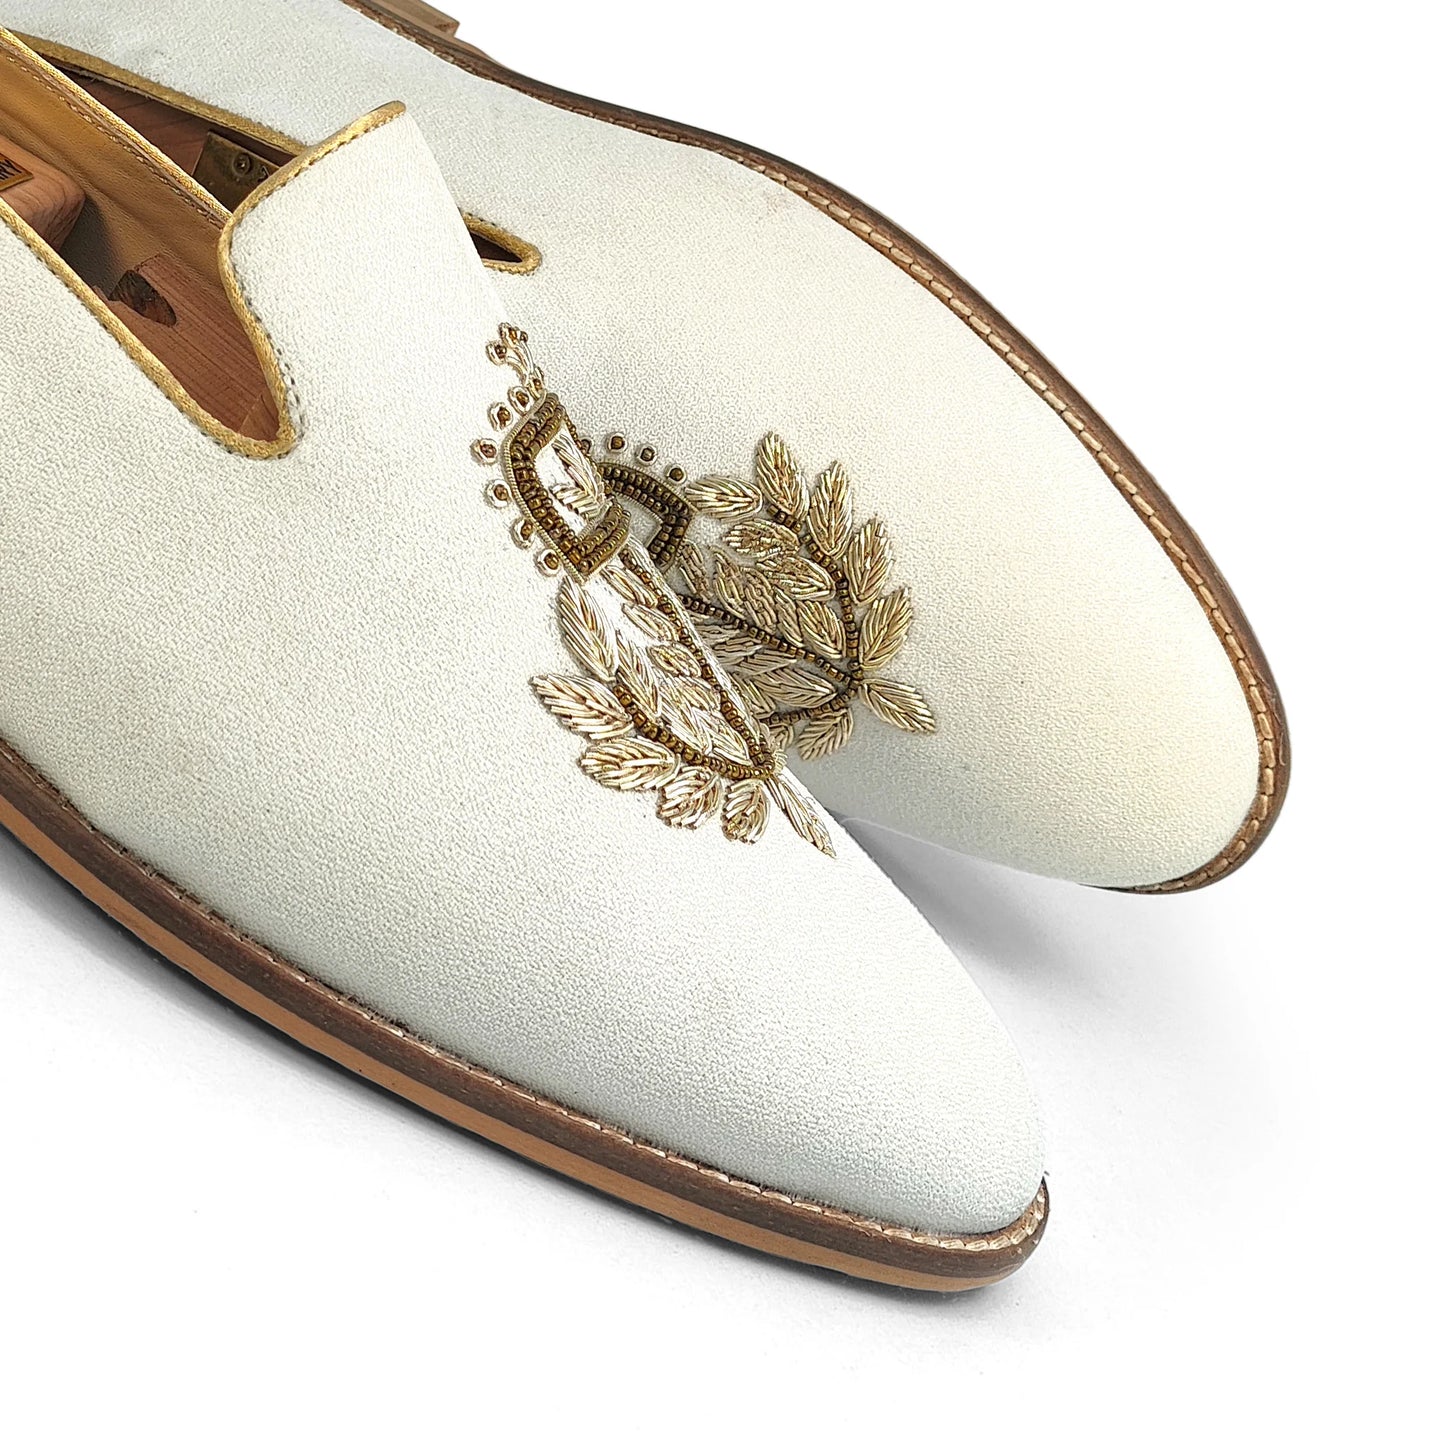 Off White Light Gold Zardozi Handwork Wedding Shoes Ethnic Loafers for Men